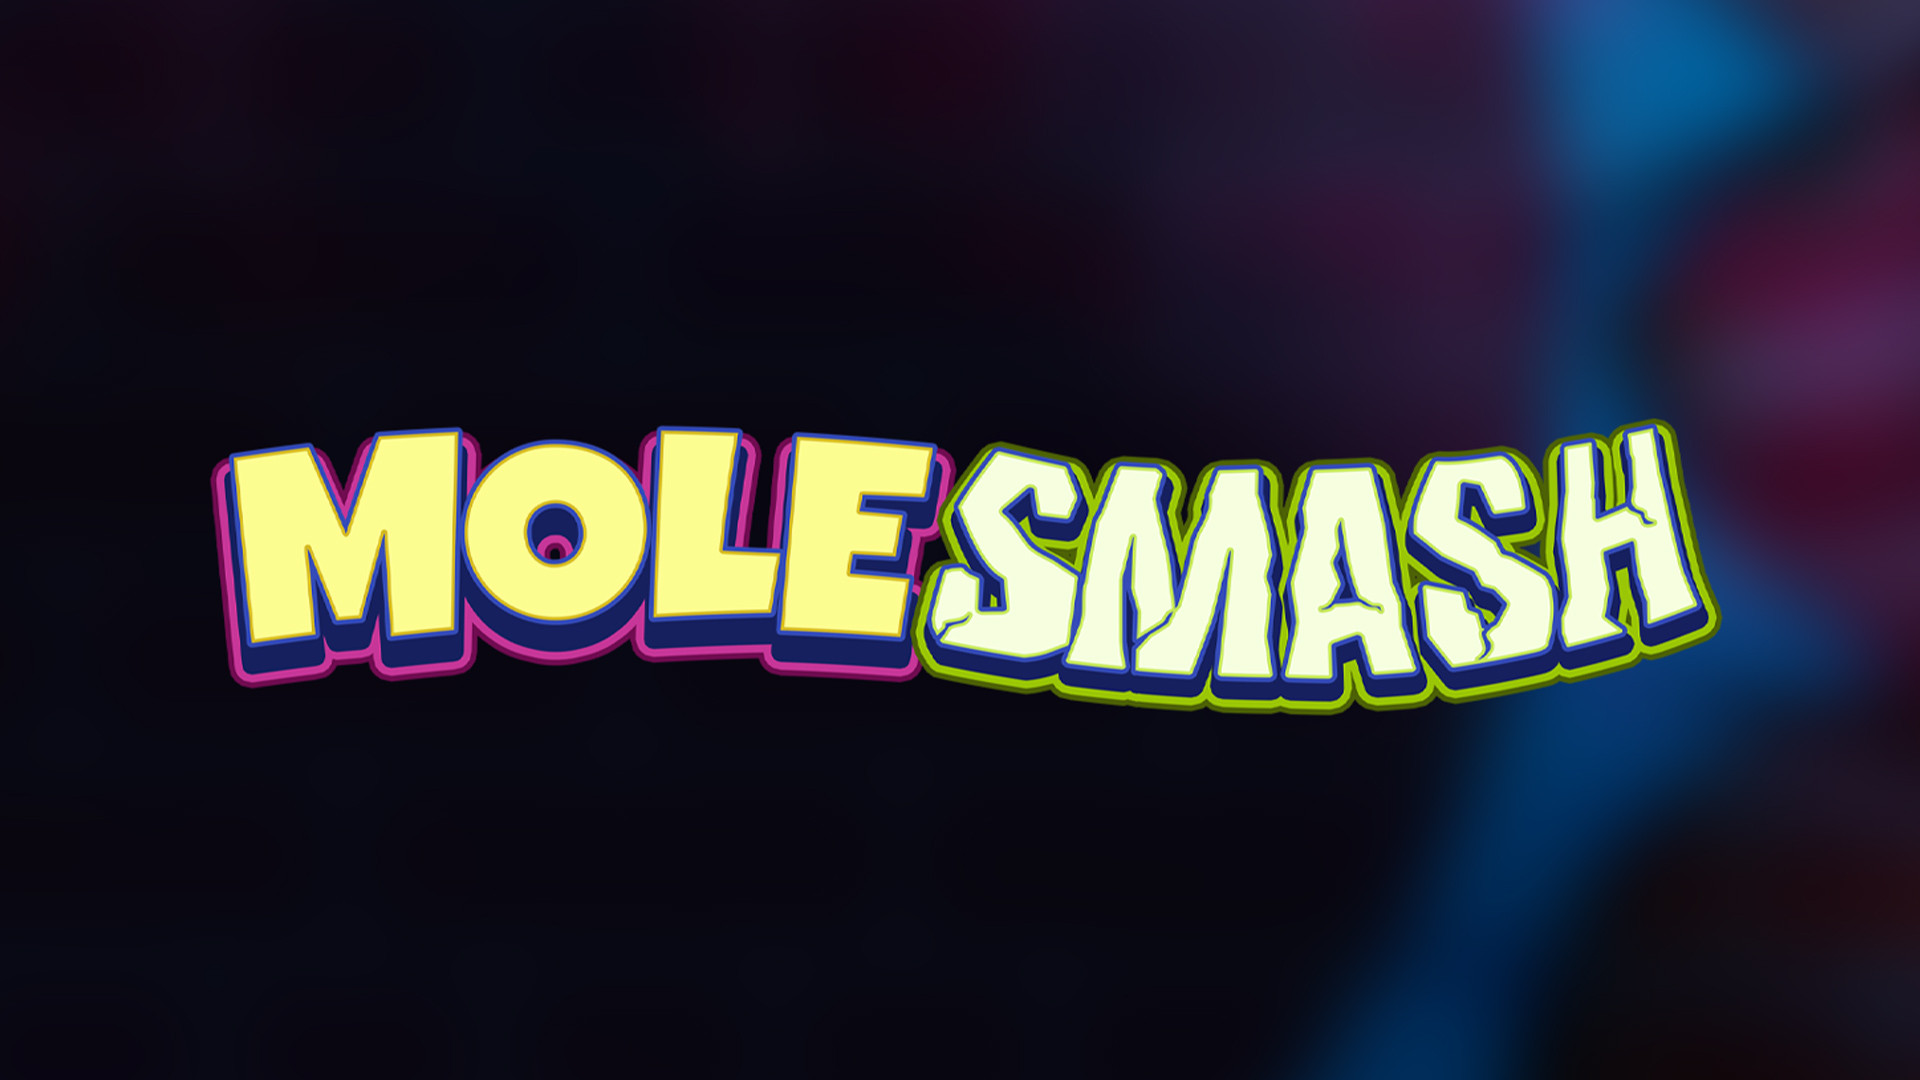 Mole Smash